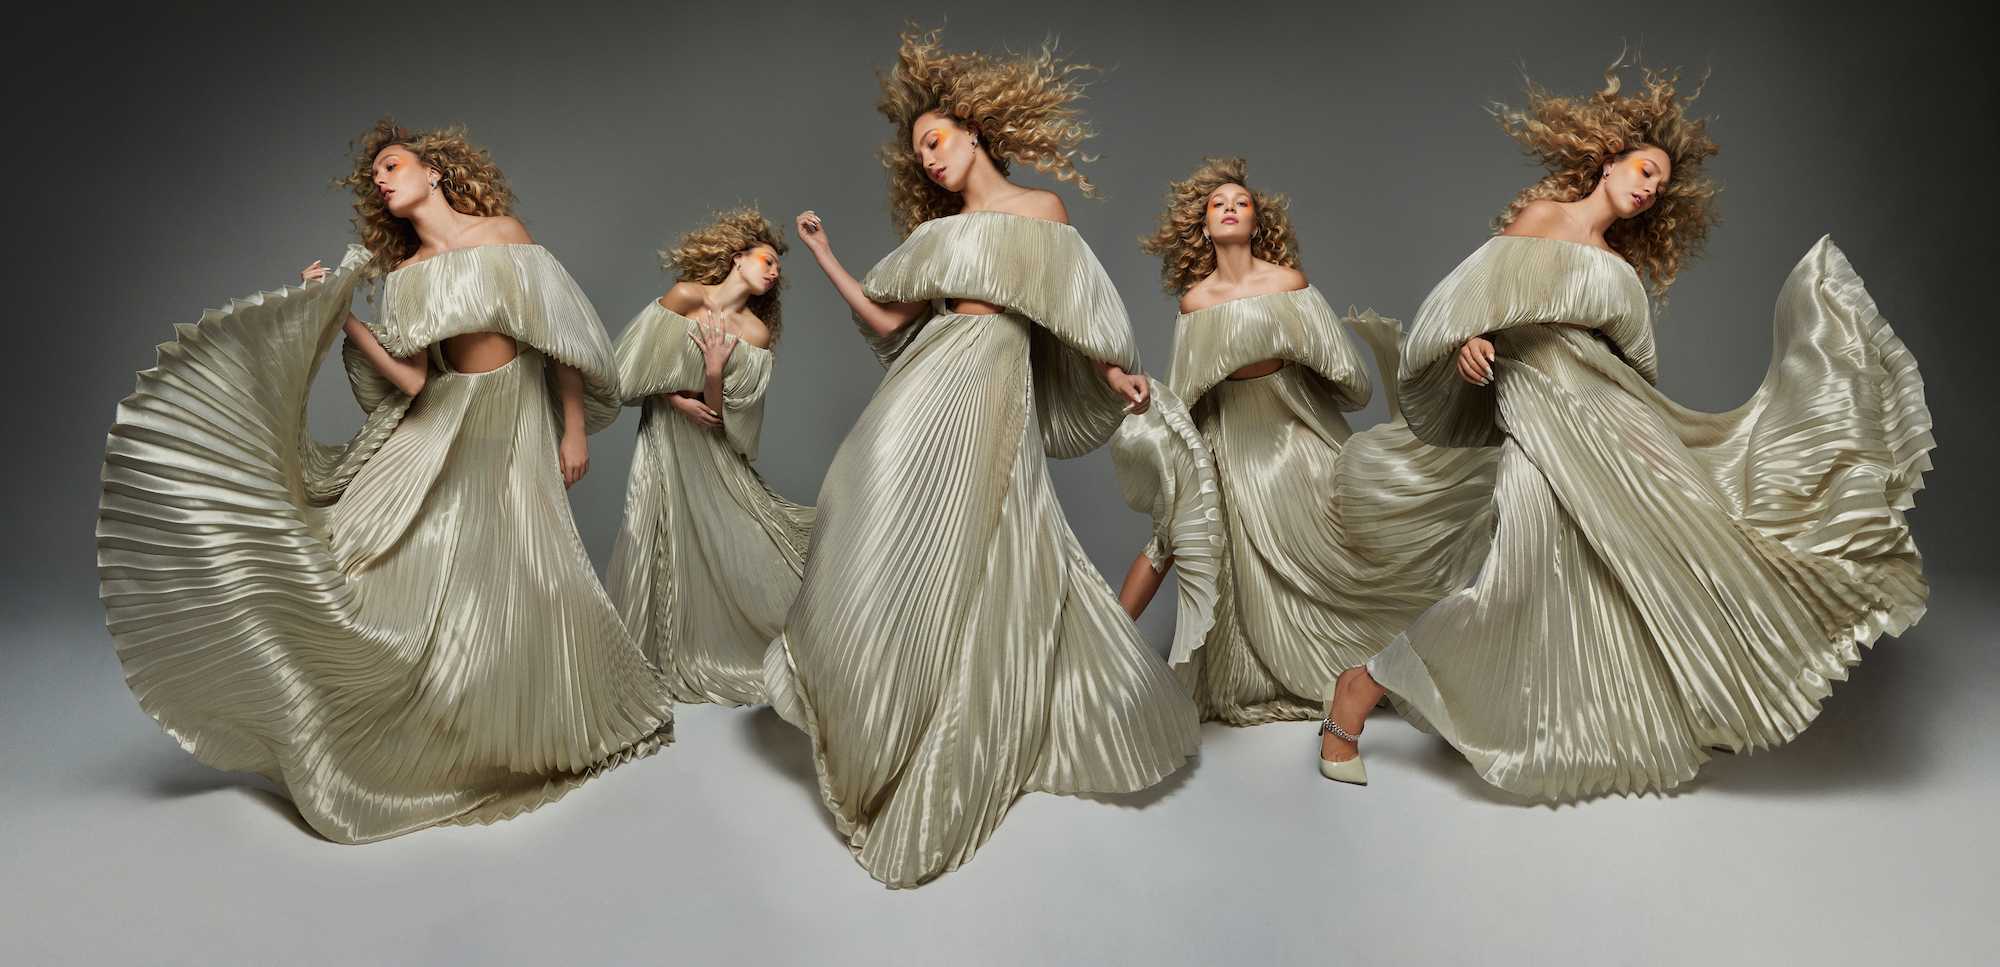 Maddie Ziegler Dancer Photoshoot Wallpapers